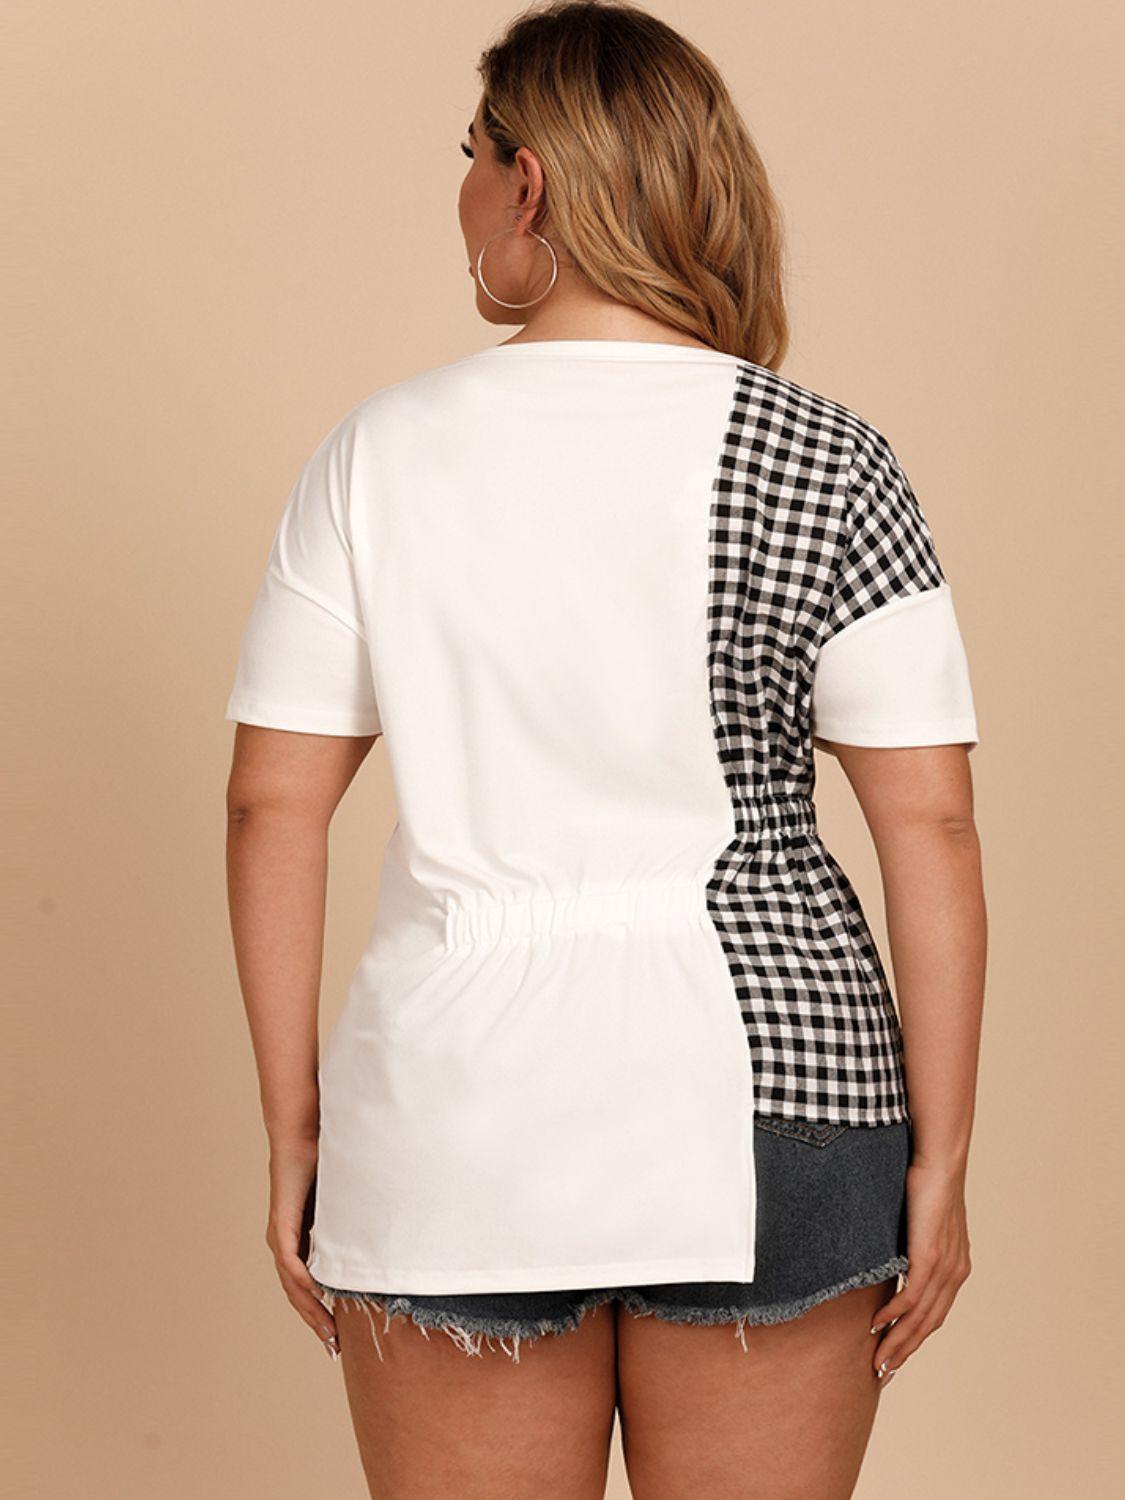 Women's Shirts - Plus Plus Size Gingham Color Block Asymmetrical T-Shirt